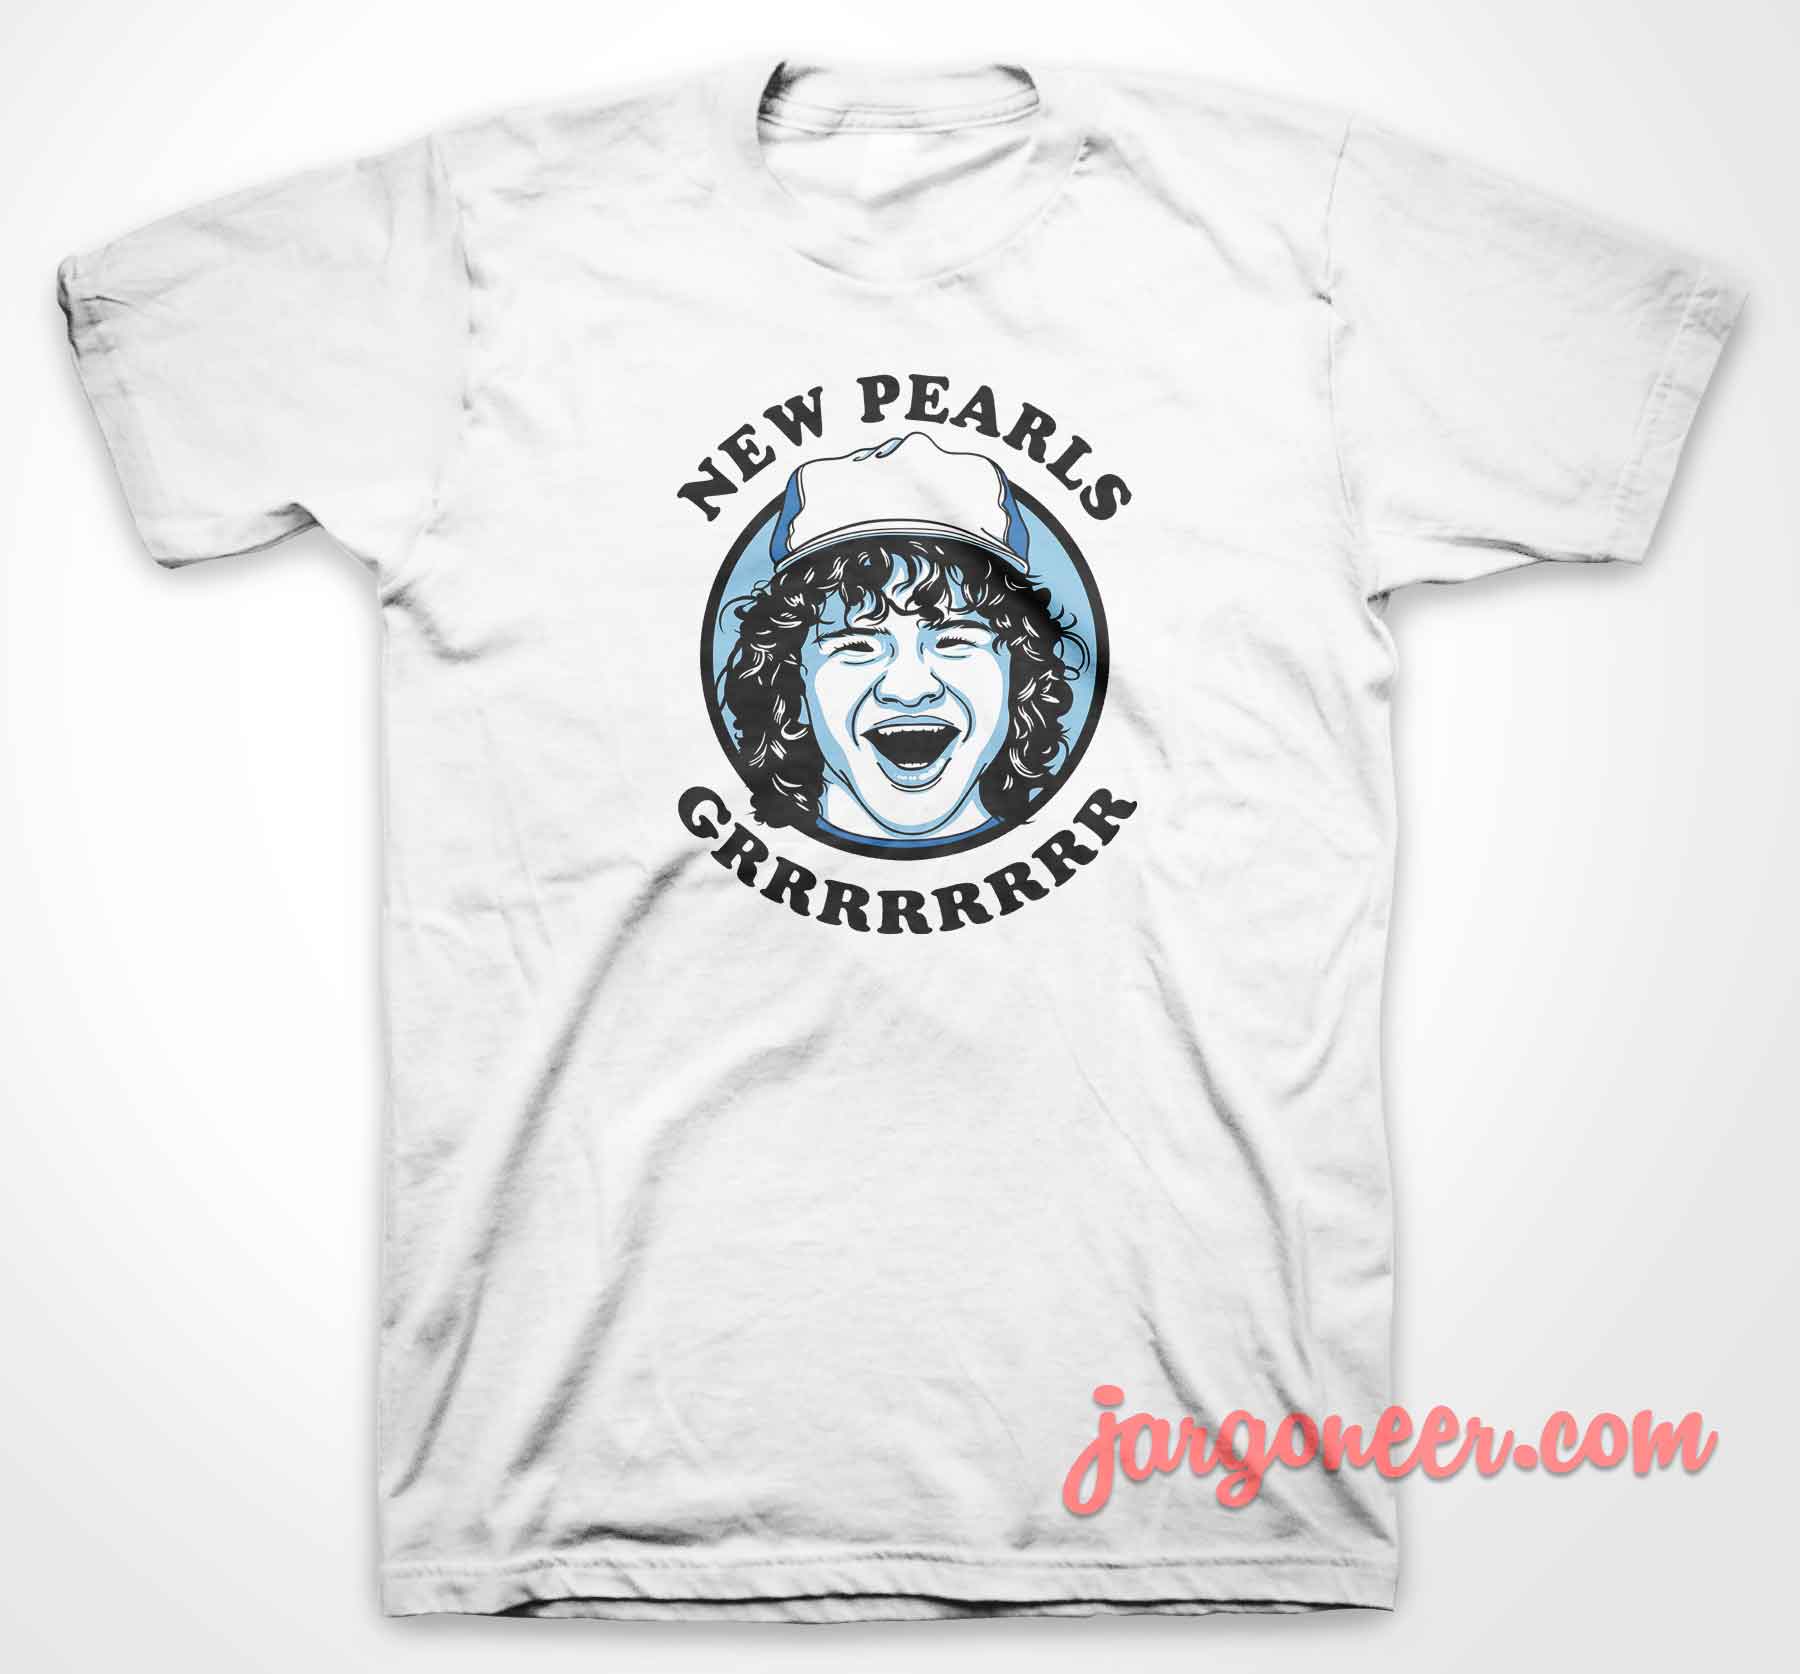 Dustin New Pearl - Shop Unique Graphic Cool Shirt Designs